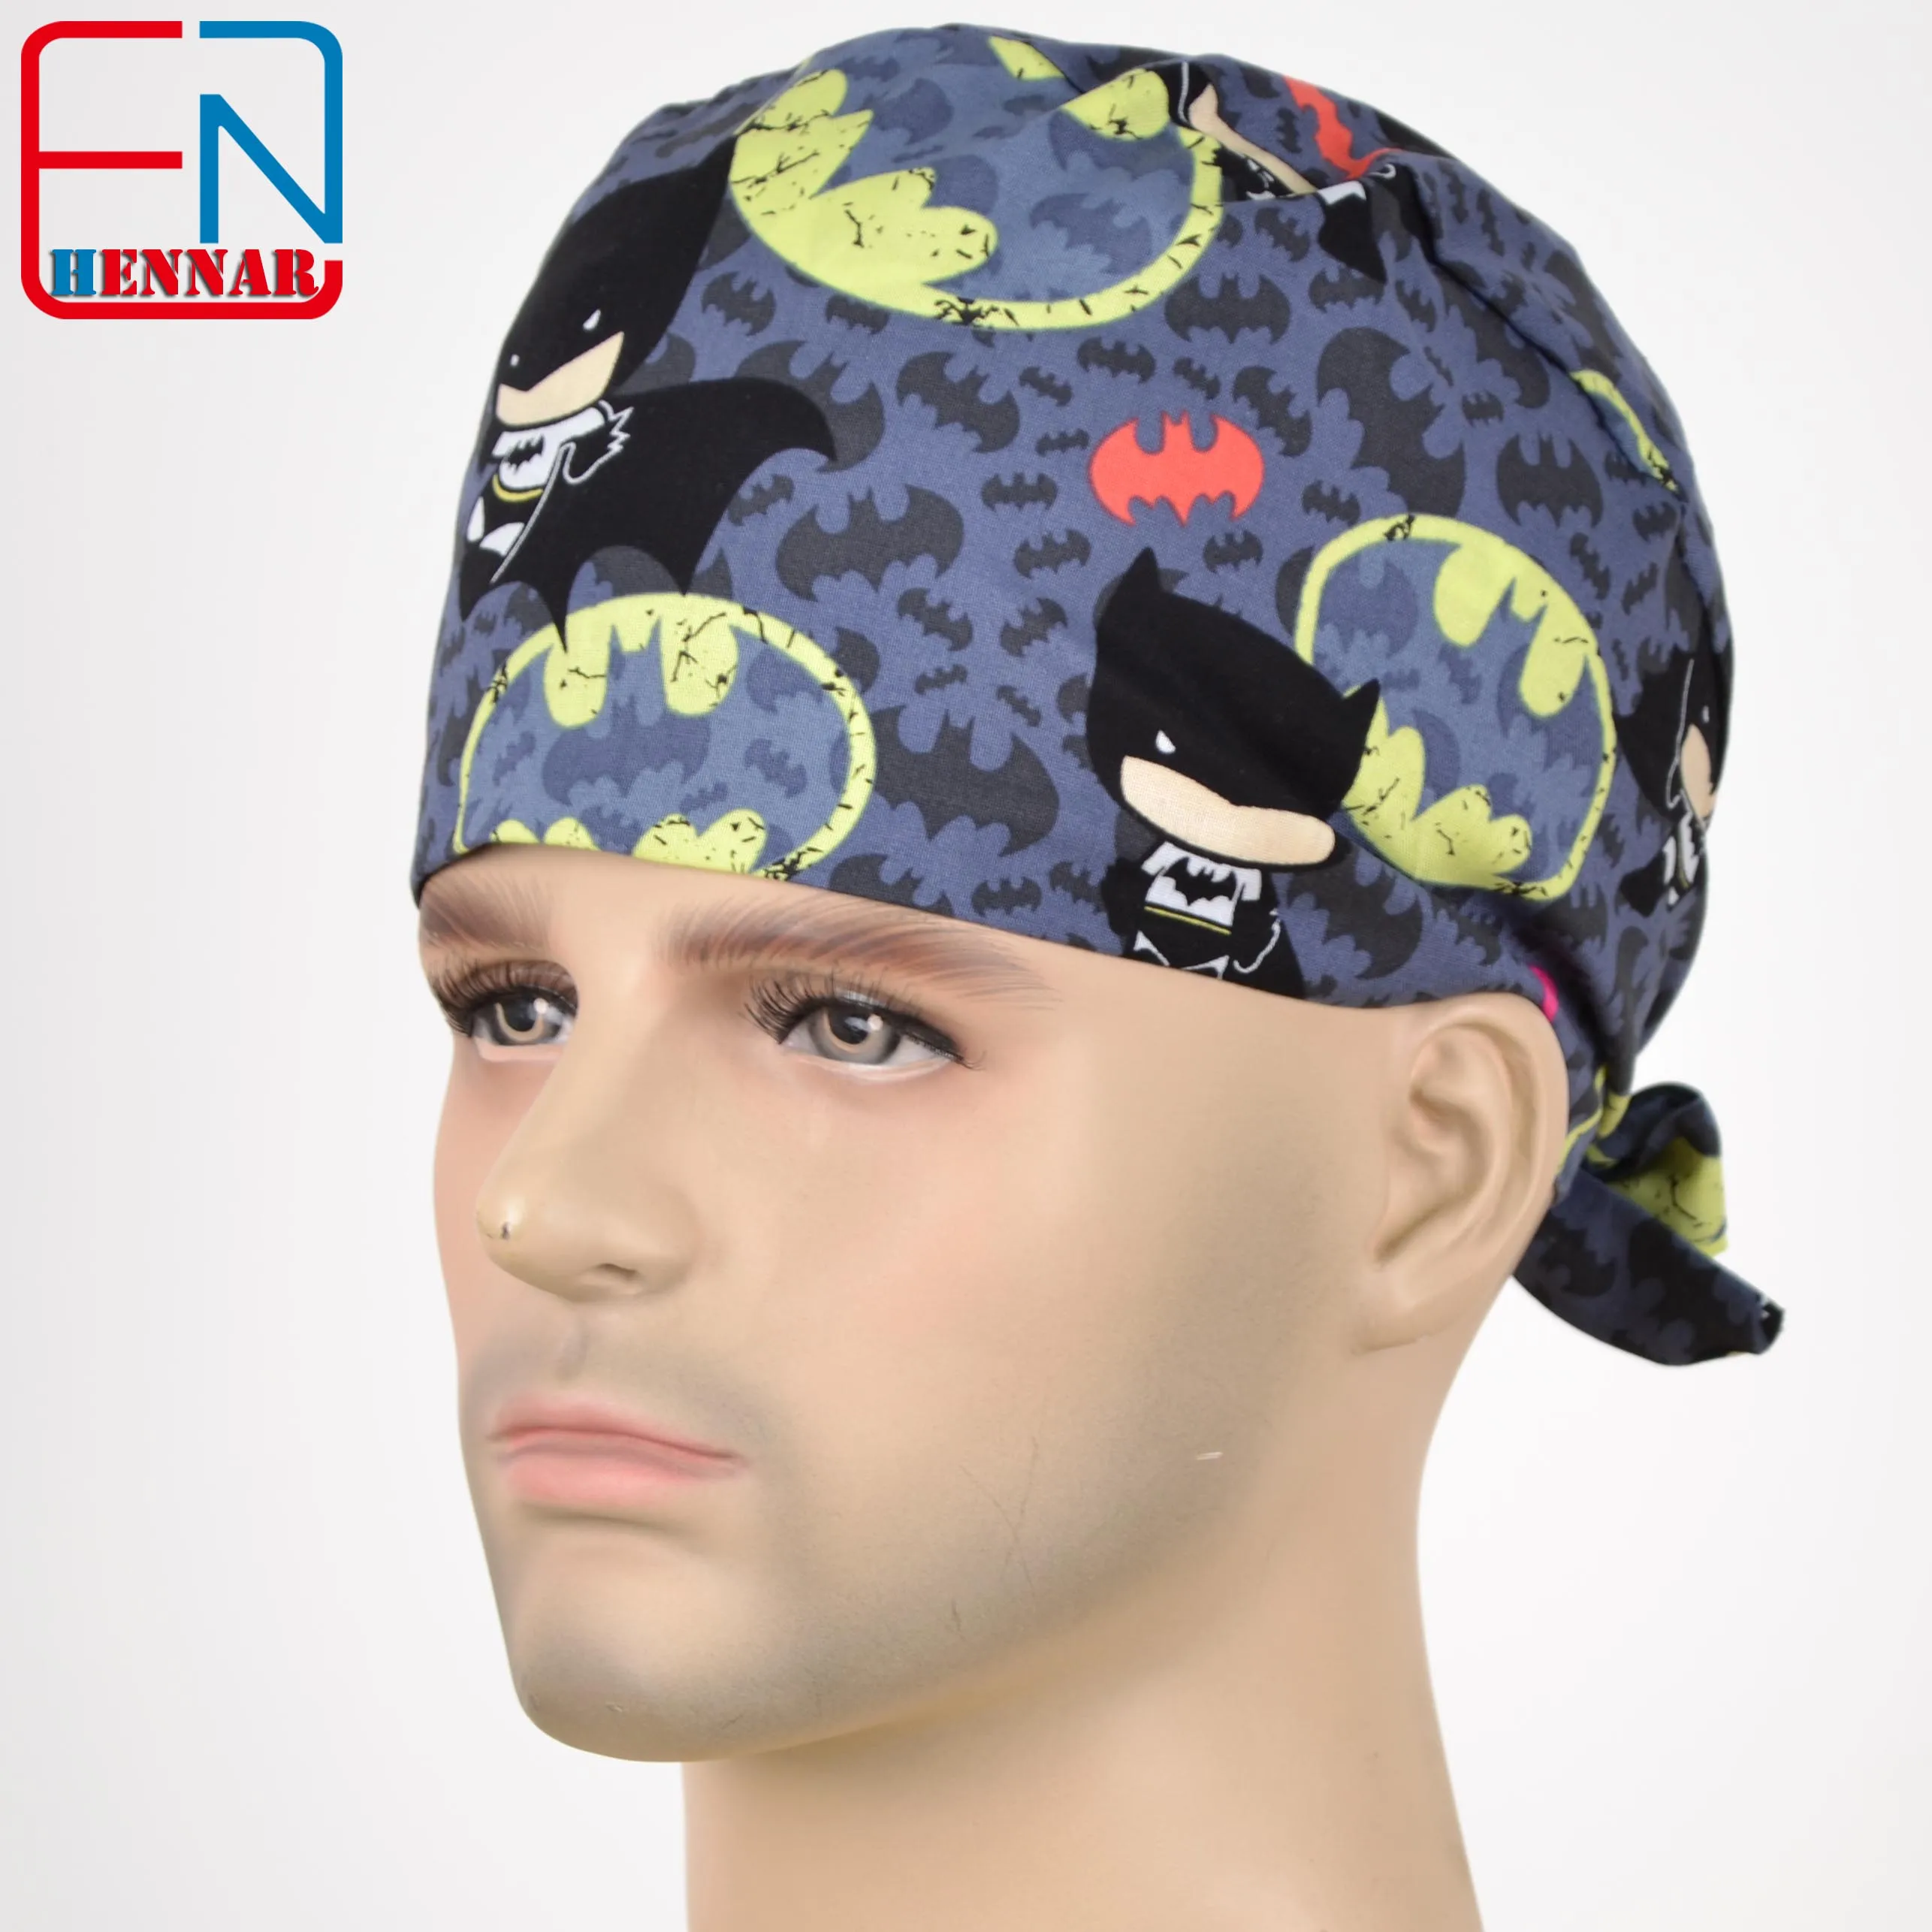 Hennar, Мужская кепка, s маски, хлопок, регулируемые эластичные ленты, хирургическая Кепка, s, медицинская больница, доктор, головной убор, кепка, маска